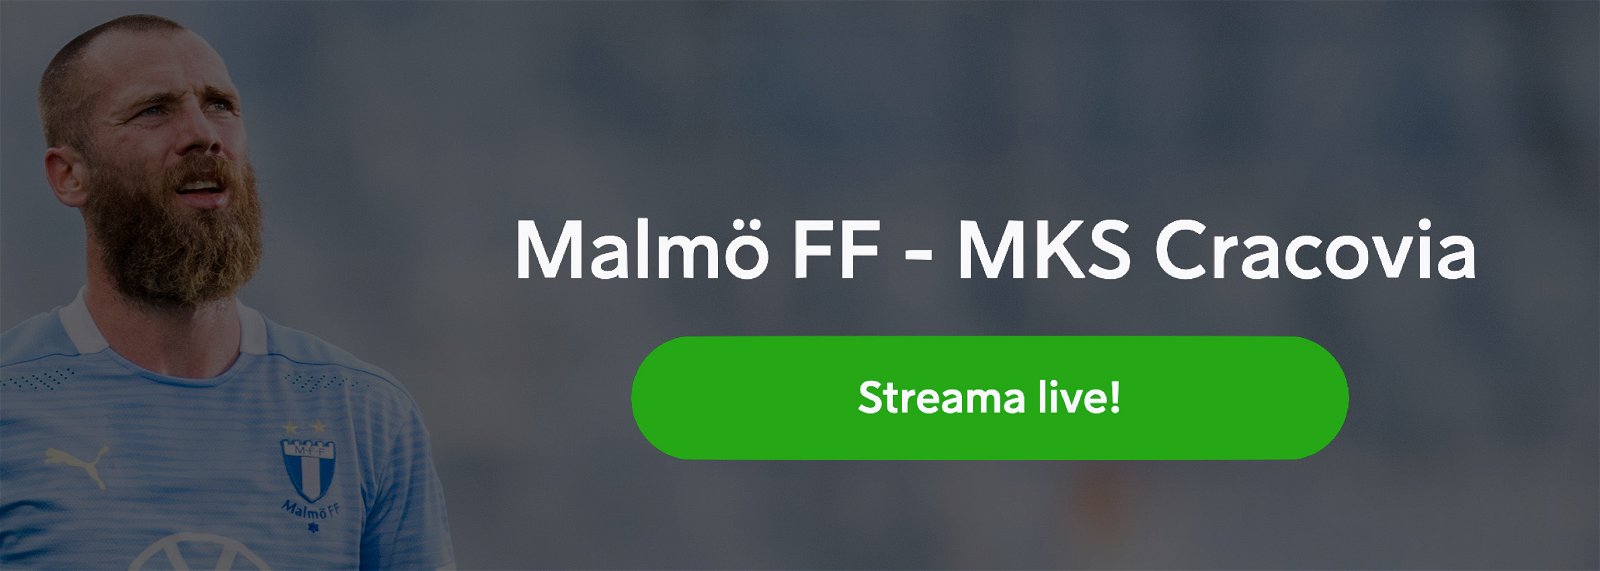 Malmö FF MKS Cracovia TV kanal